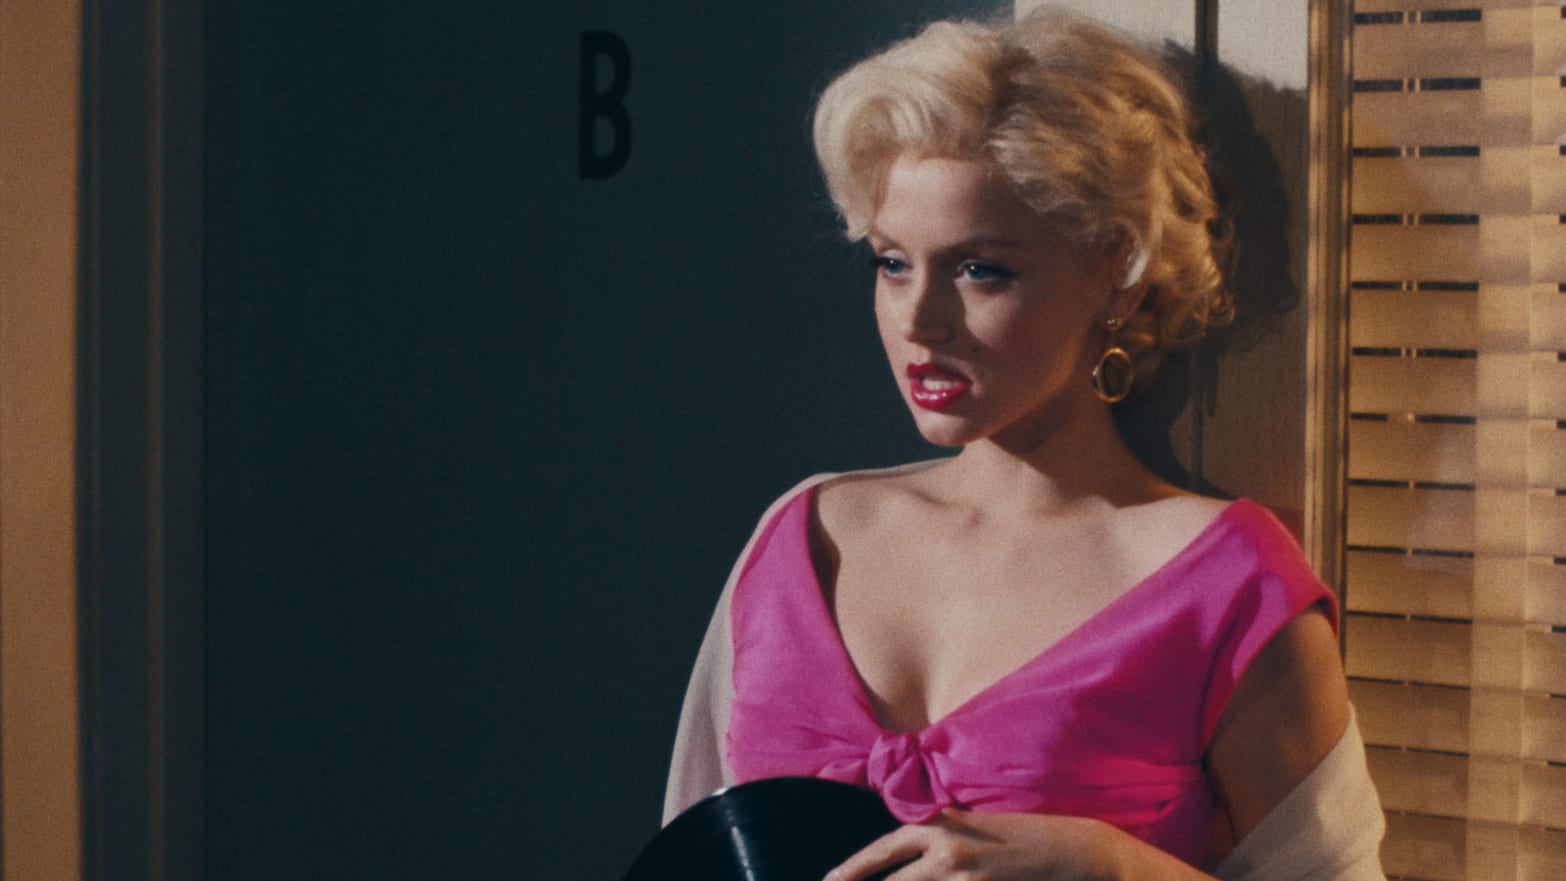 Blonde Is JFKs Rape of Marilyn Monroe pic